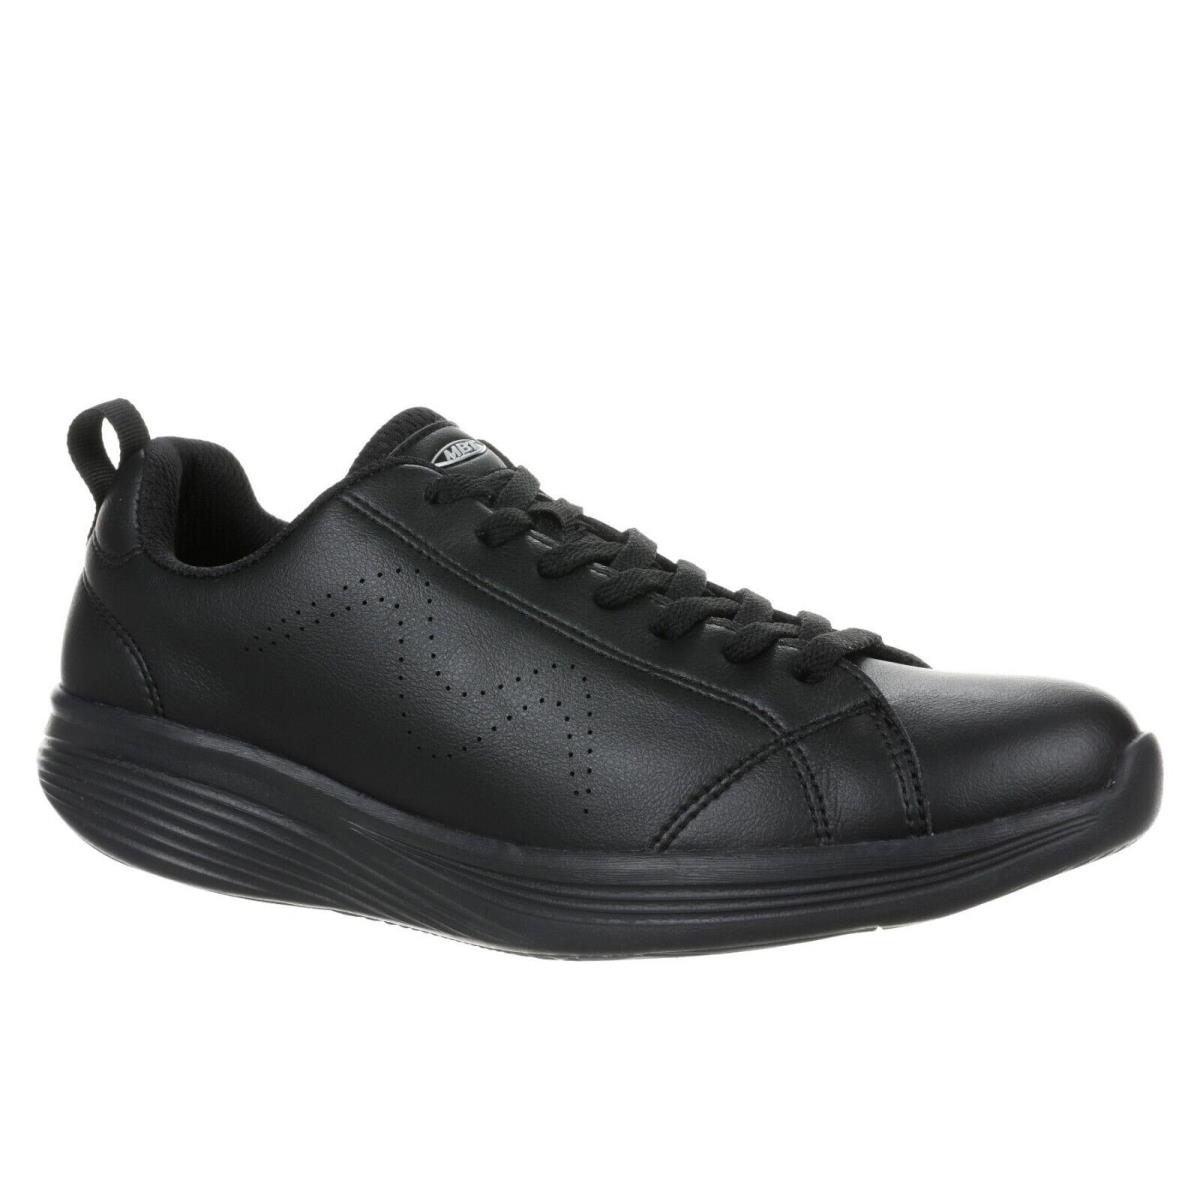 Mbt Ren Men`s Walking Shoe Ultra-light Comfort Leather Upper 2 Colors BLACK/BLACK-702758-257L